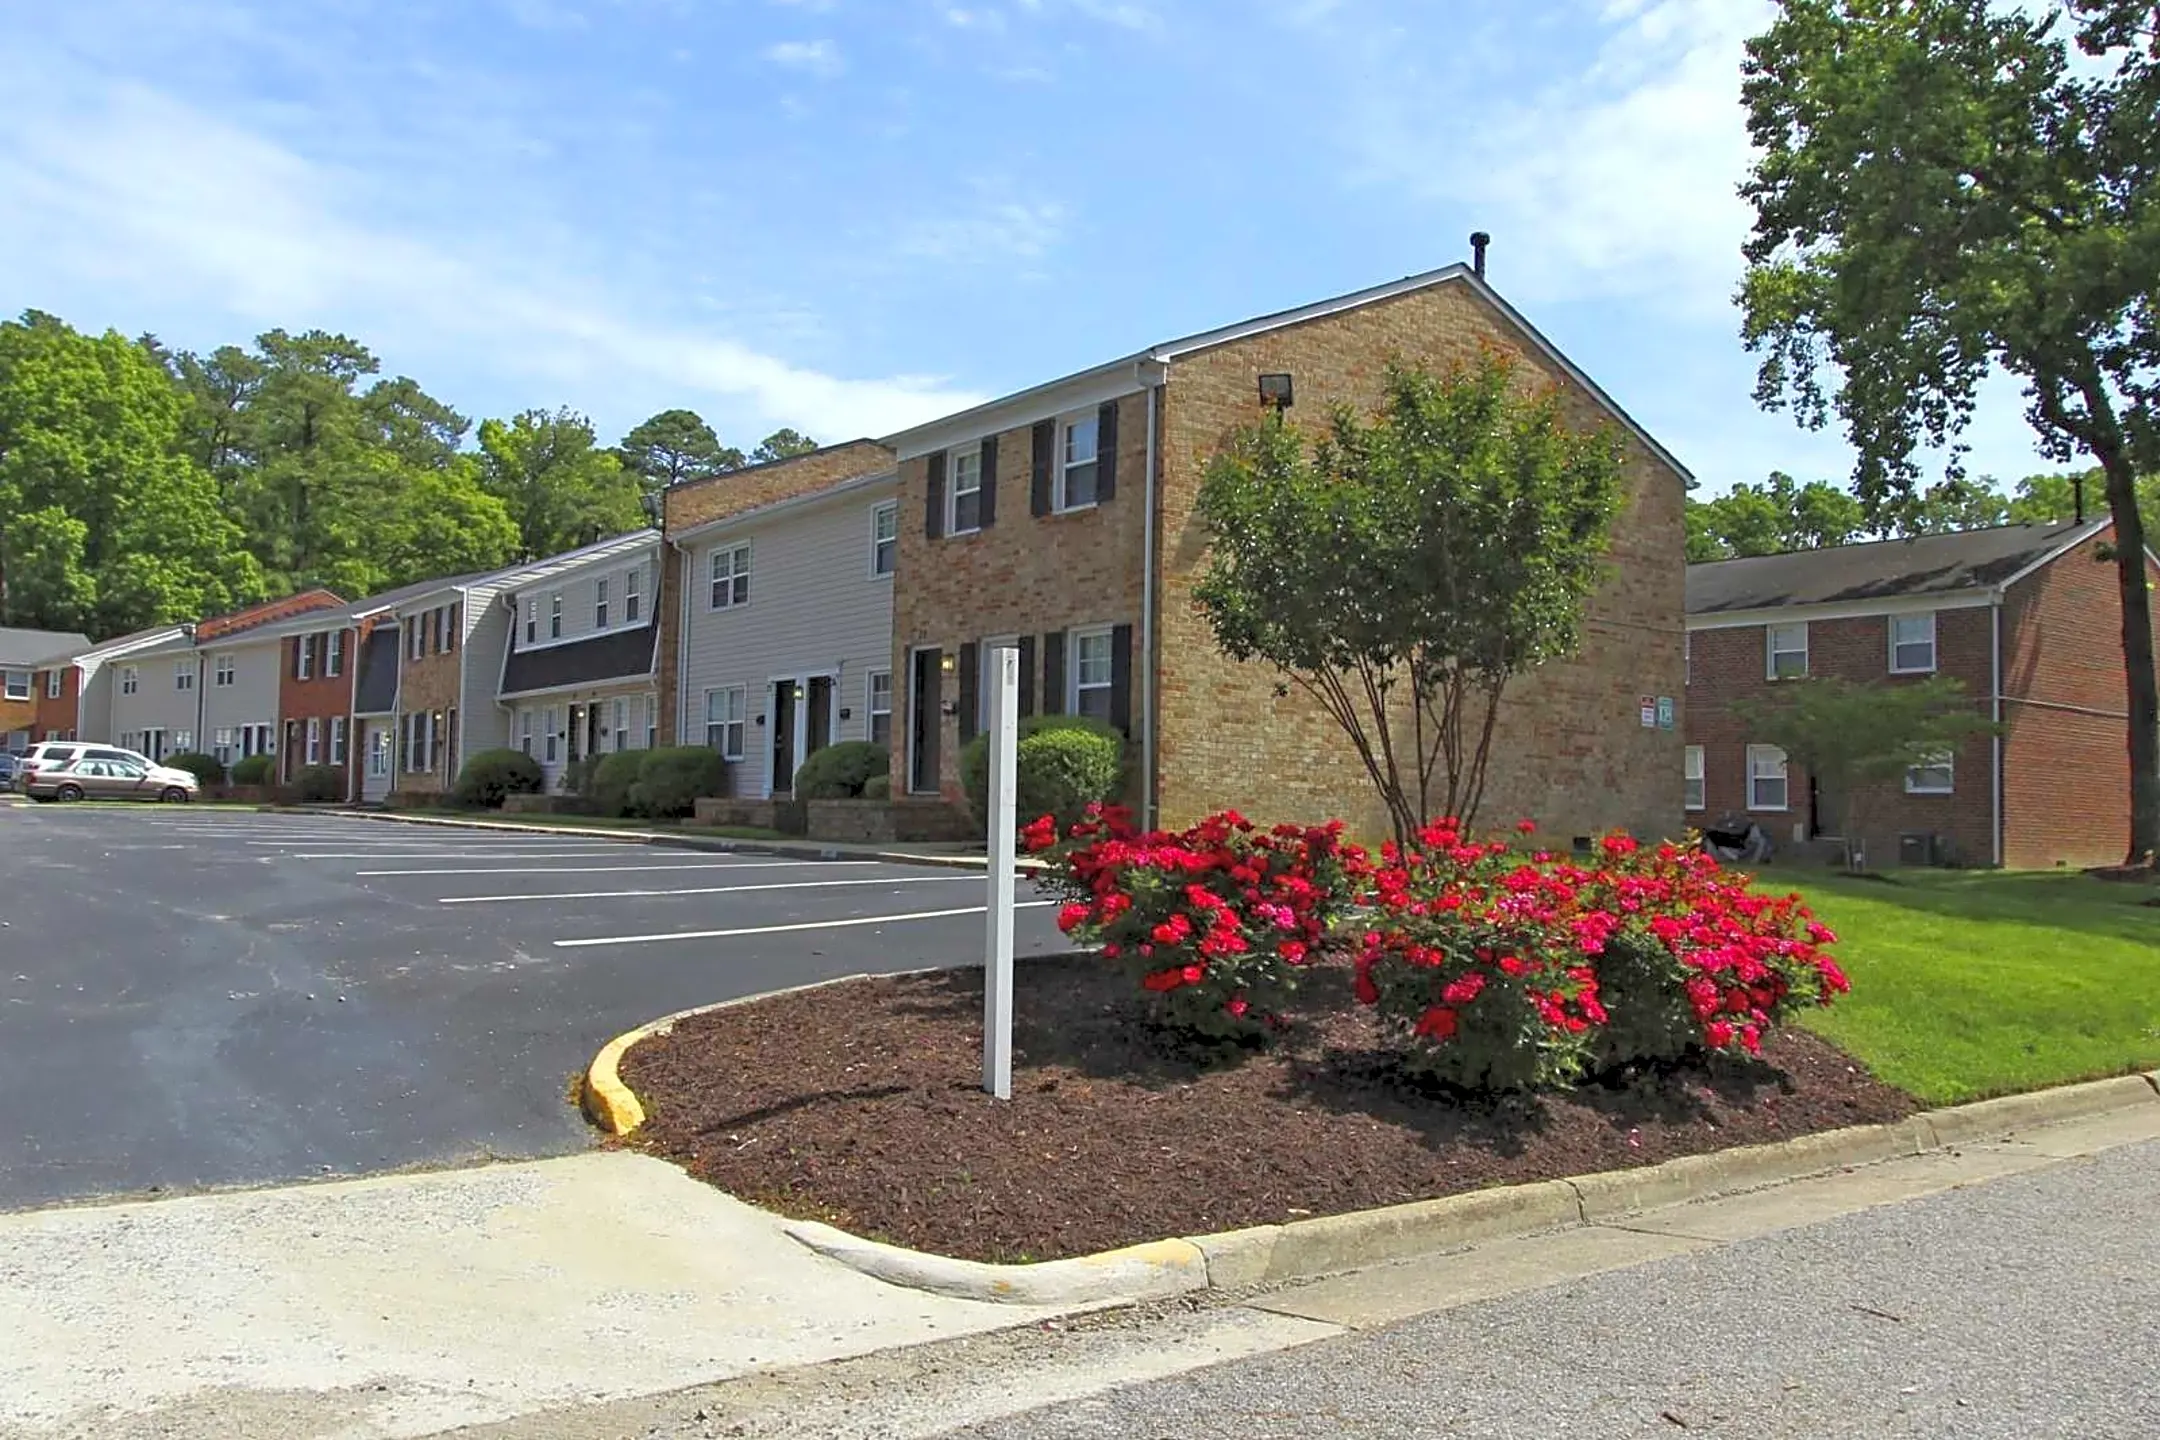 Building - Uptown Apartments - Newport News, VA